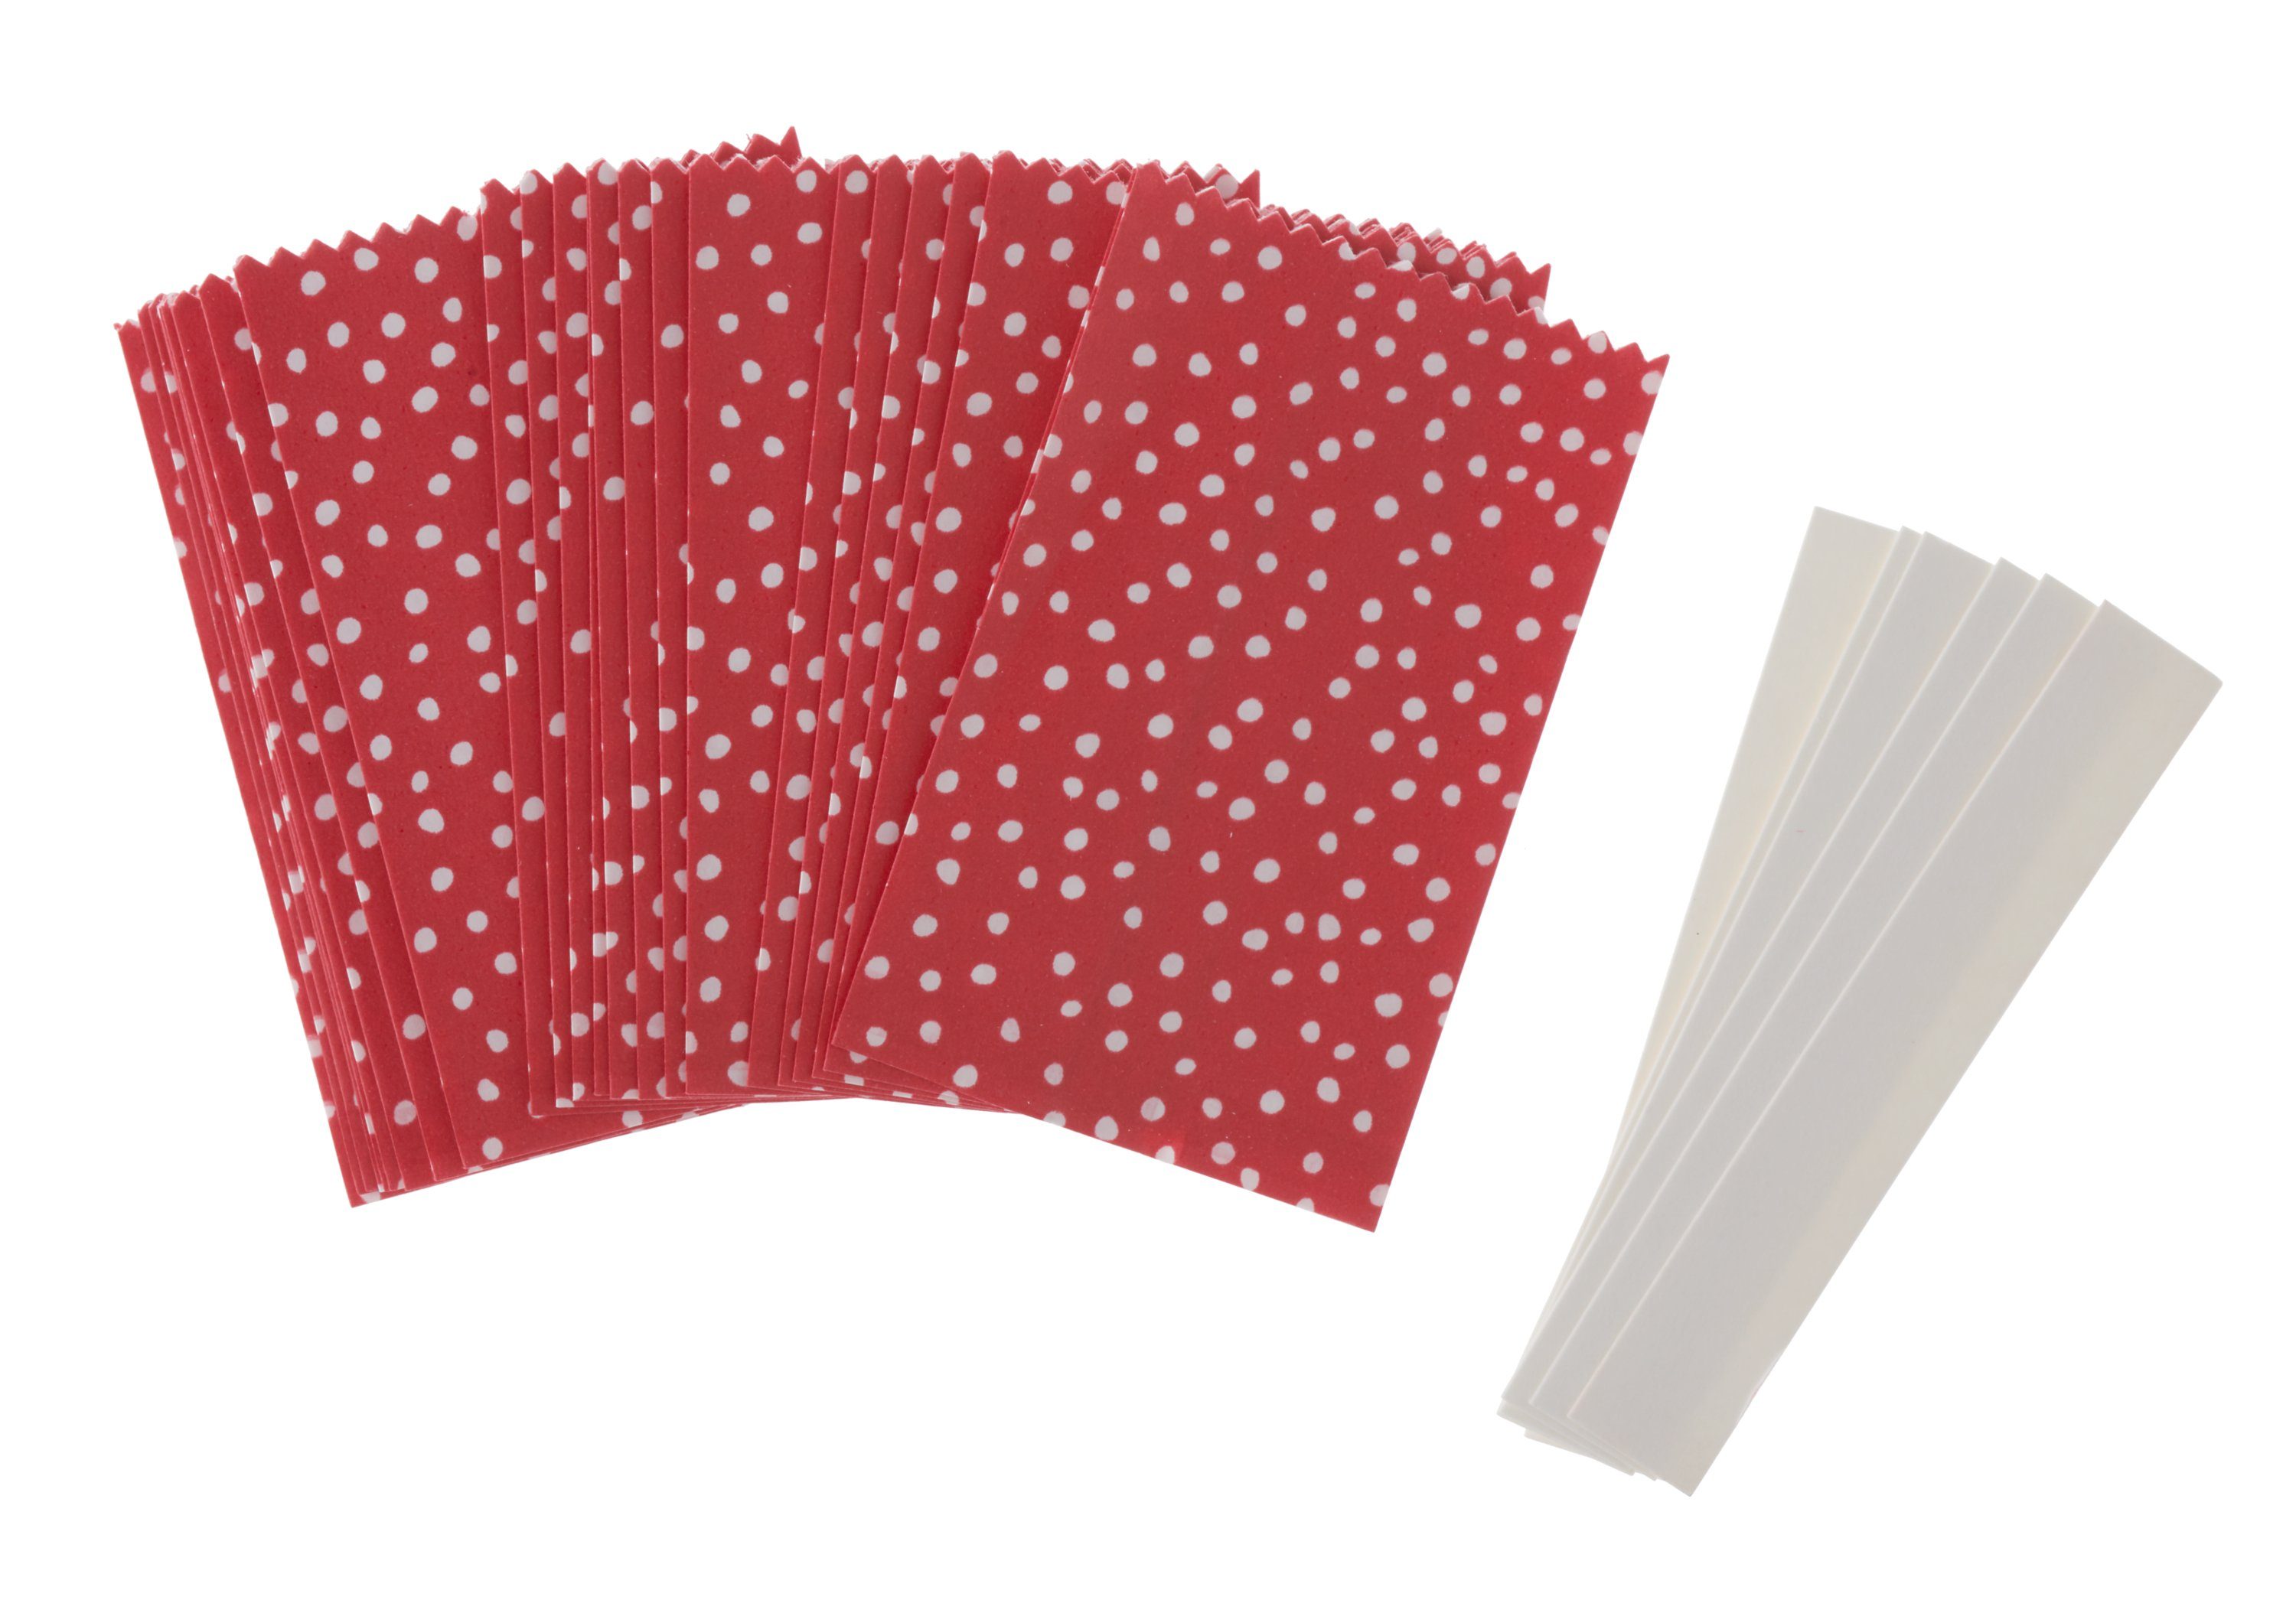 Papiertüten Sterne-Set, Design Punkte Rico klein, Papierdekoration Rot